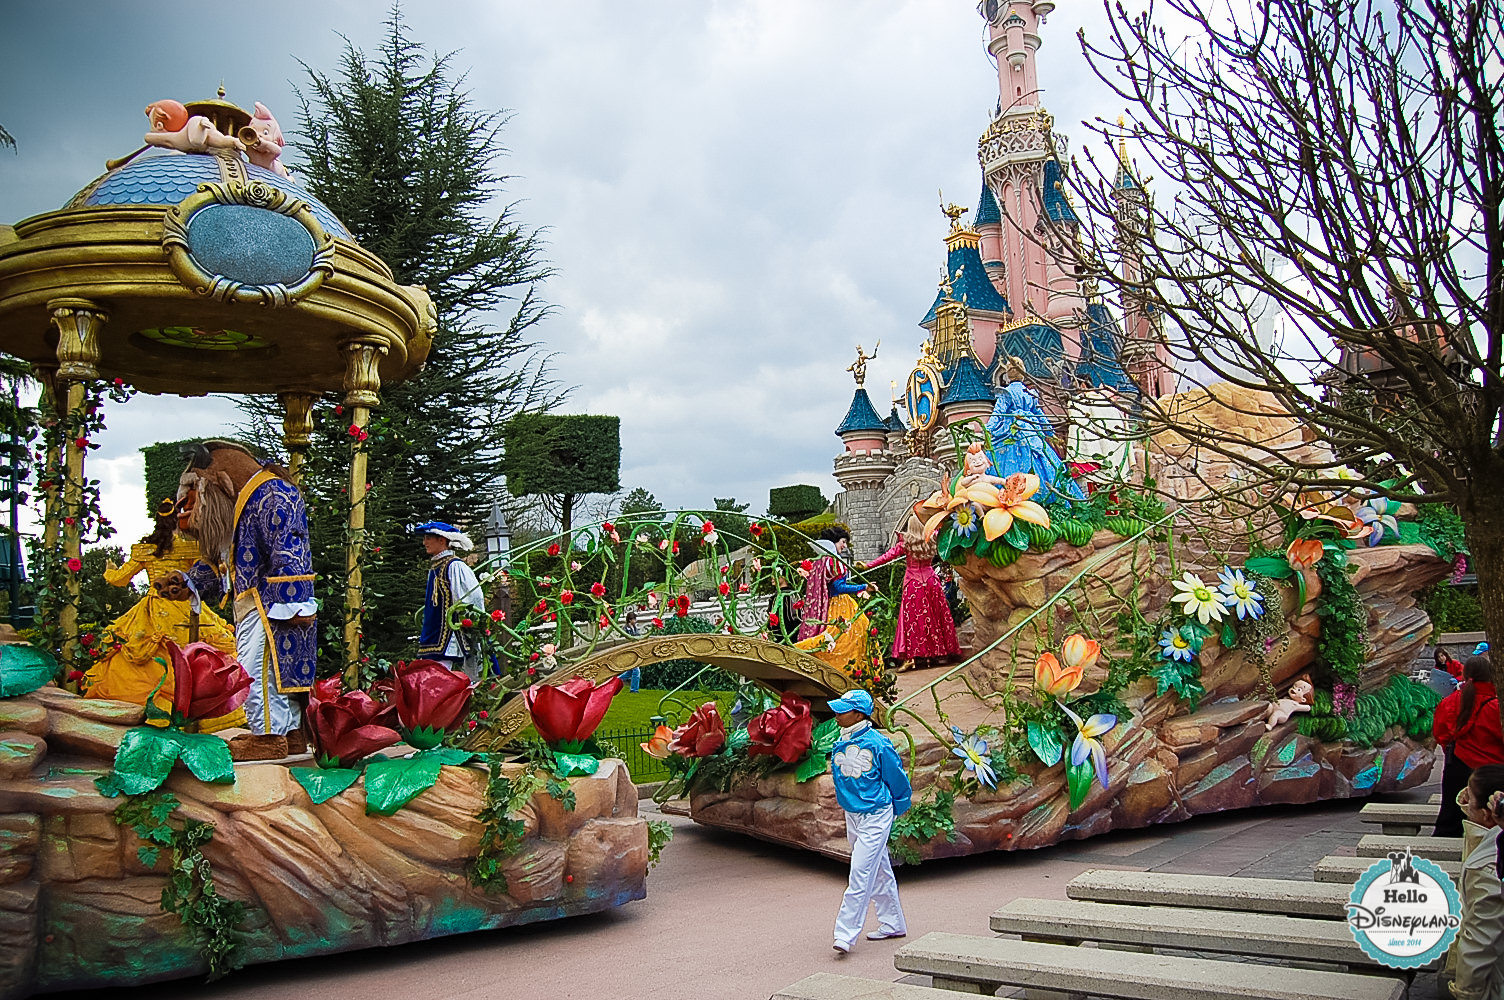 Disney Once Upon a Dream Parade - Disneyland Paris -29